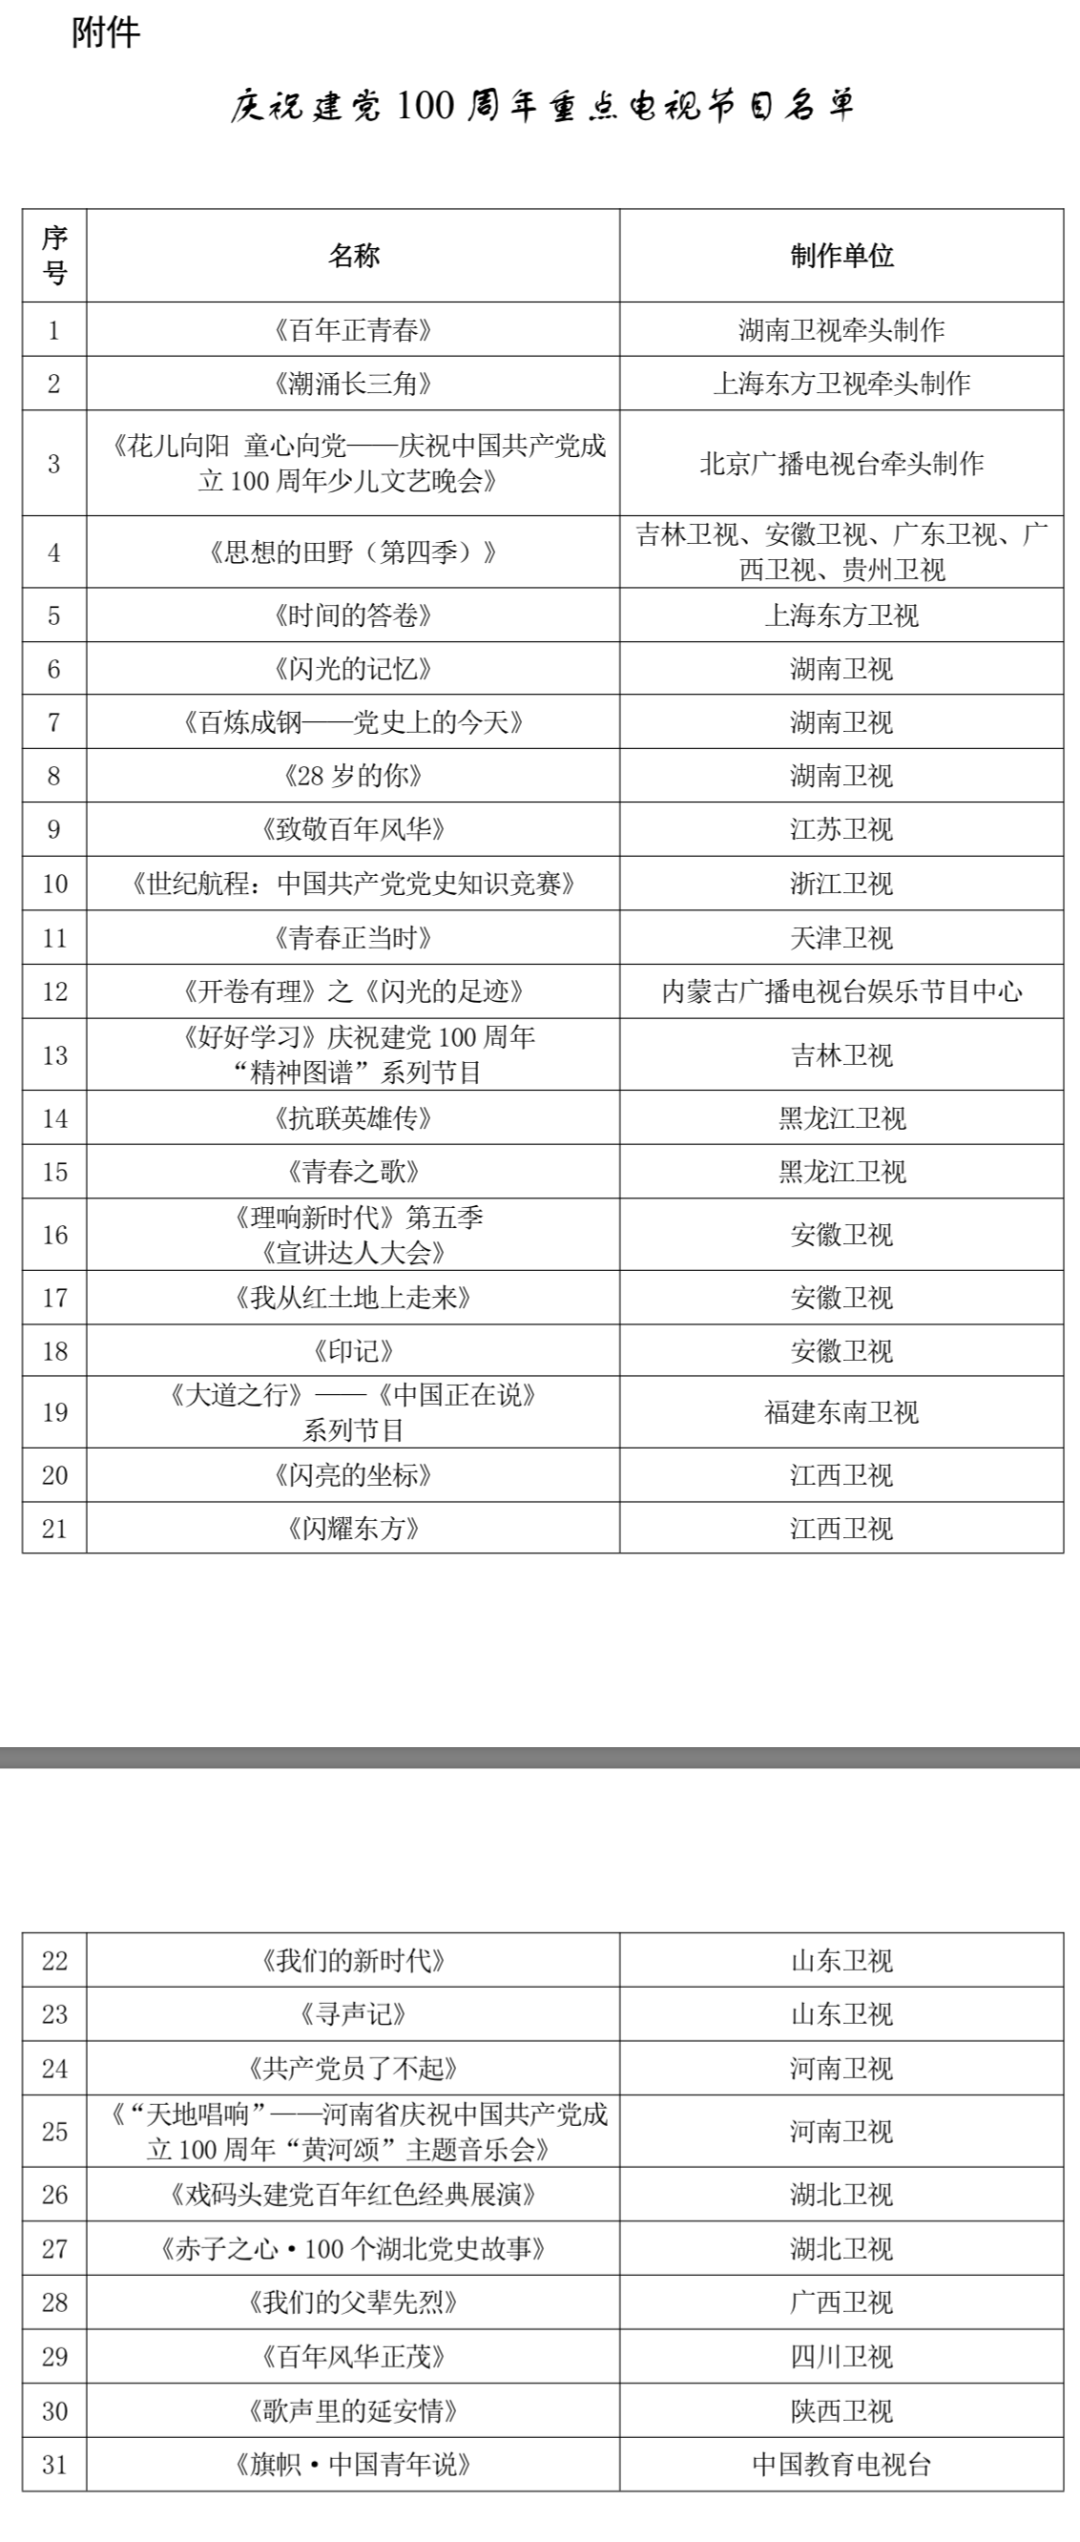 广电总局发布庆祝建党百年重点广播电视节目名单